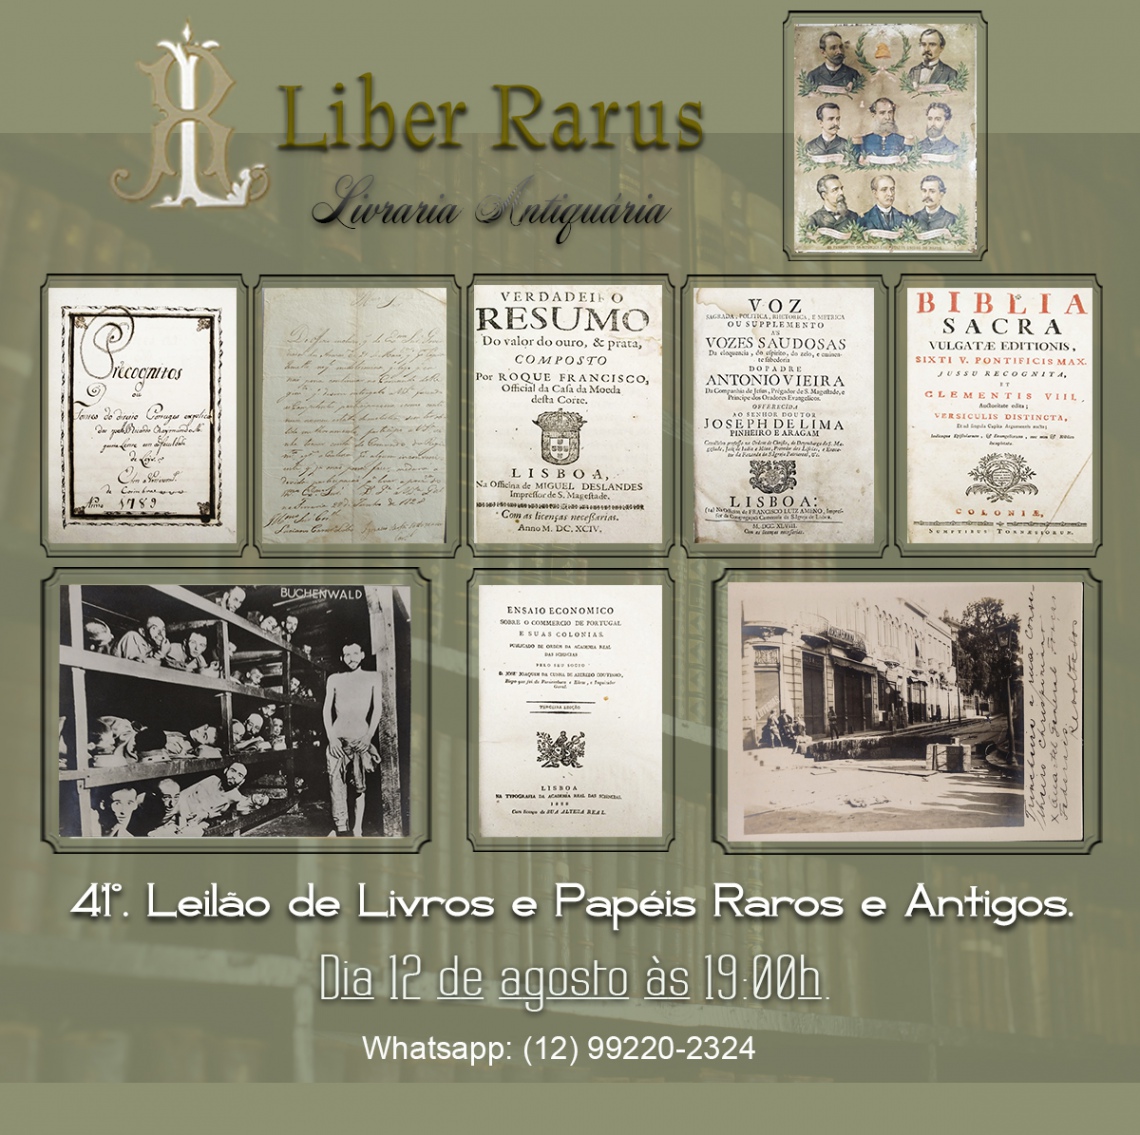 41º Leilão de Livros e Papéis Raros e Antigos - Liber Rarus - 12/8/2022 - 19h